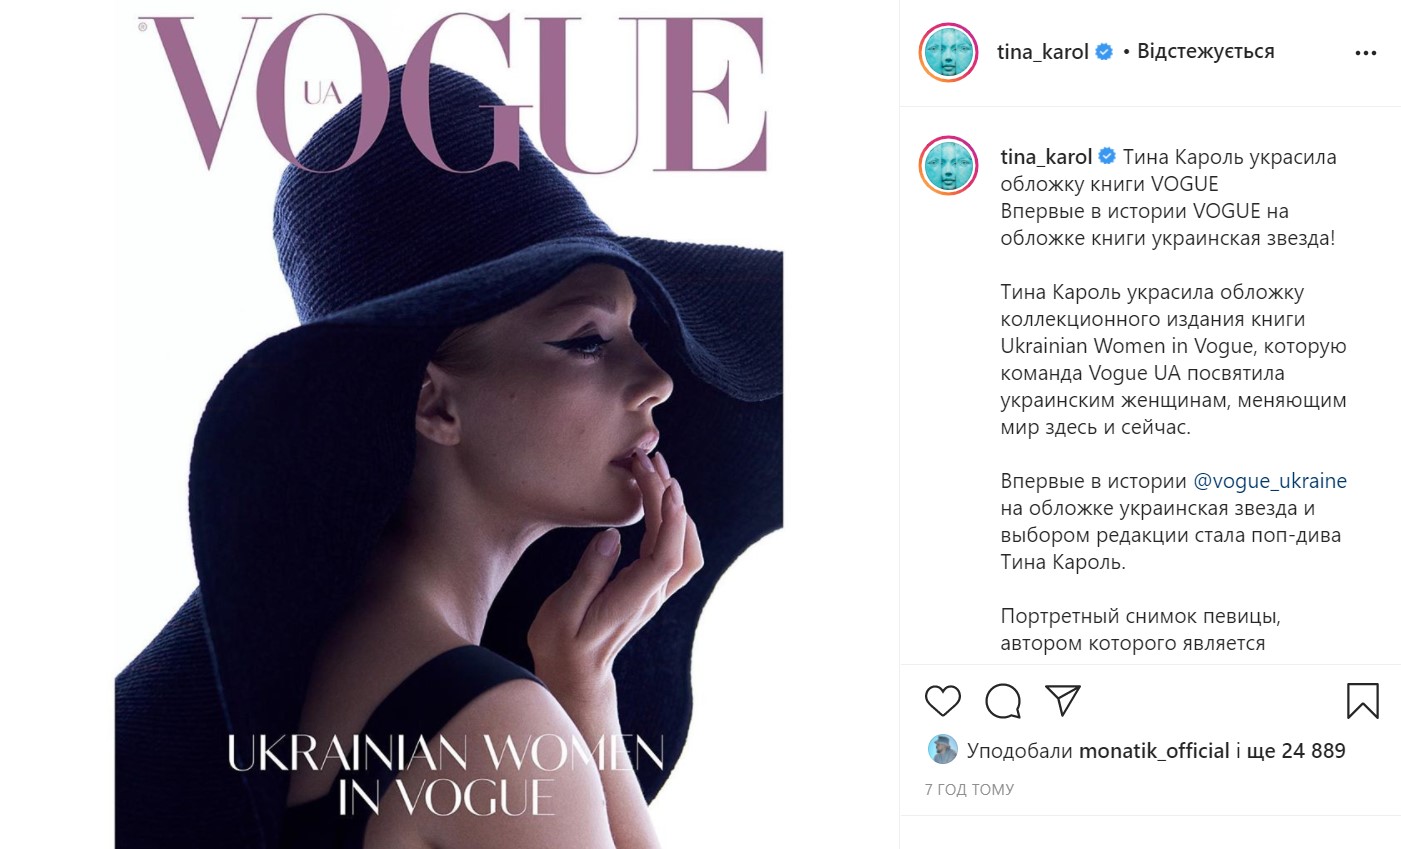 Тина Кароль стала первой украинской звездой на обложке книги Vogue - фото 2